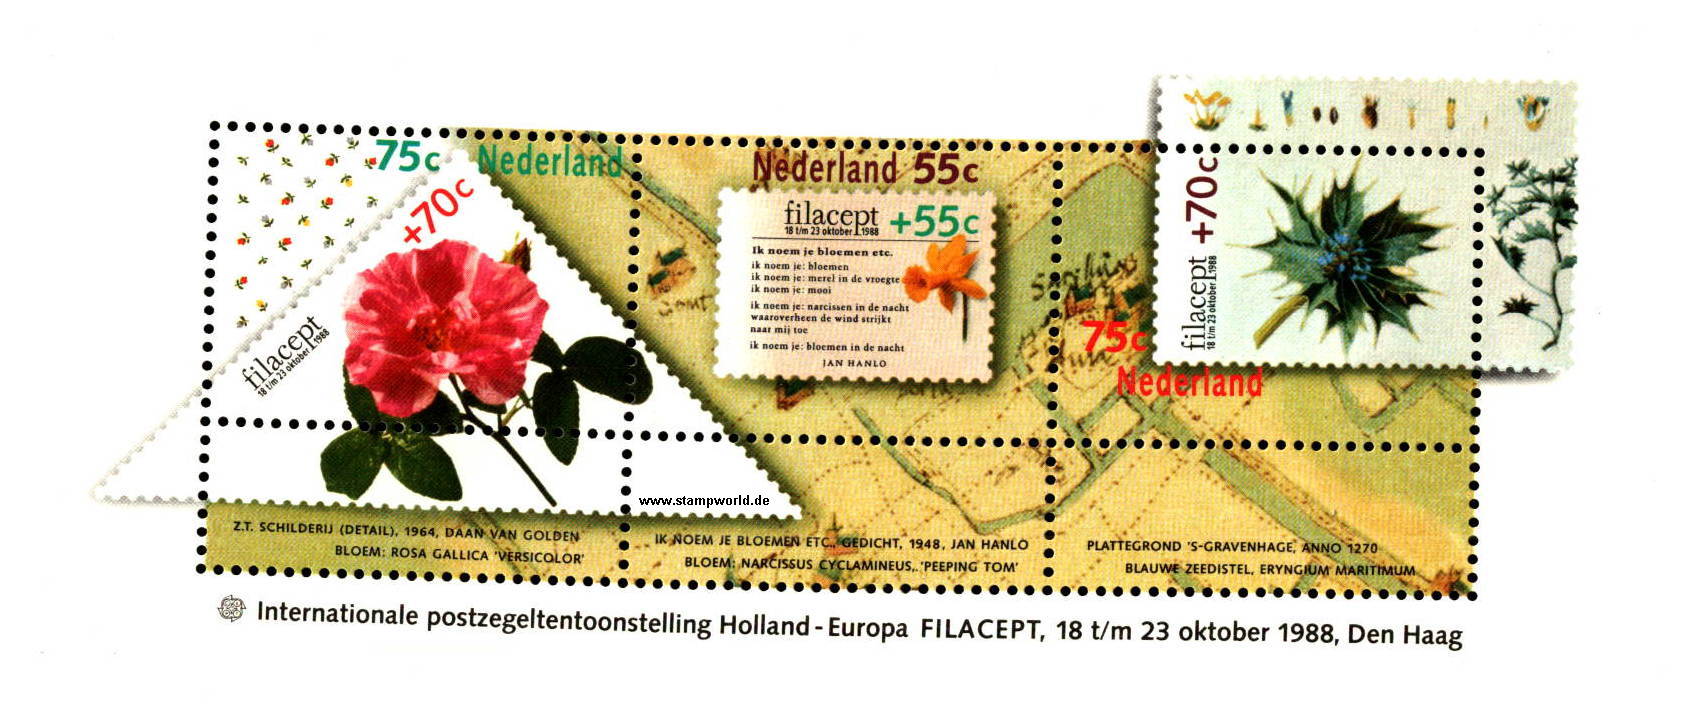 Briefmarken/Stamps FILACEPT/Rose/Blumen (Narcissus)